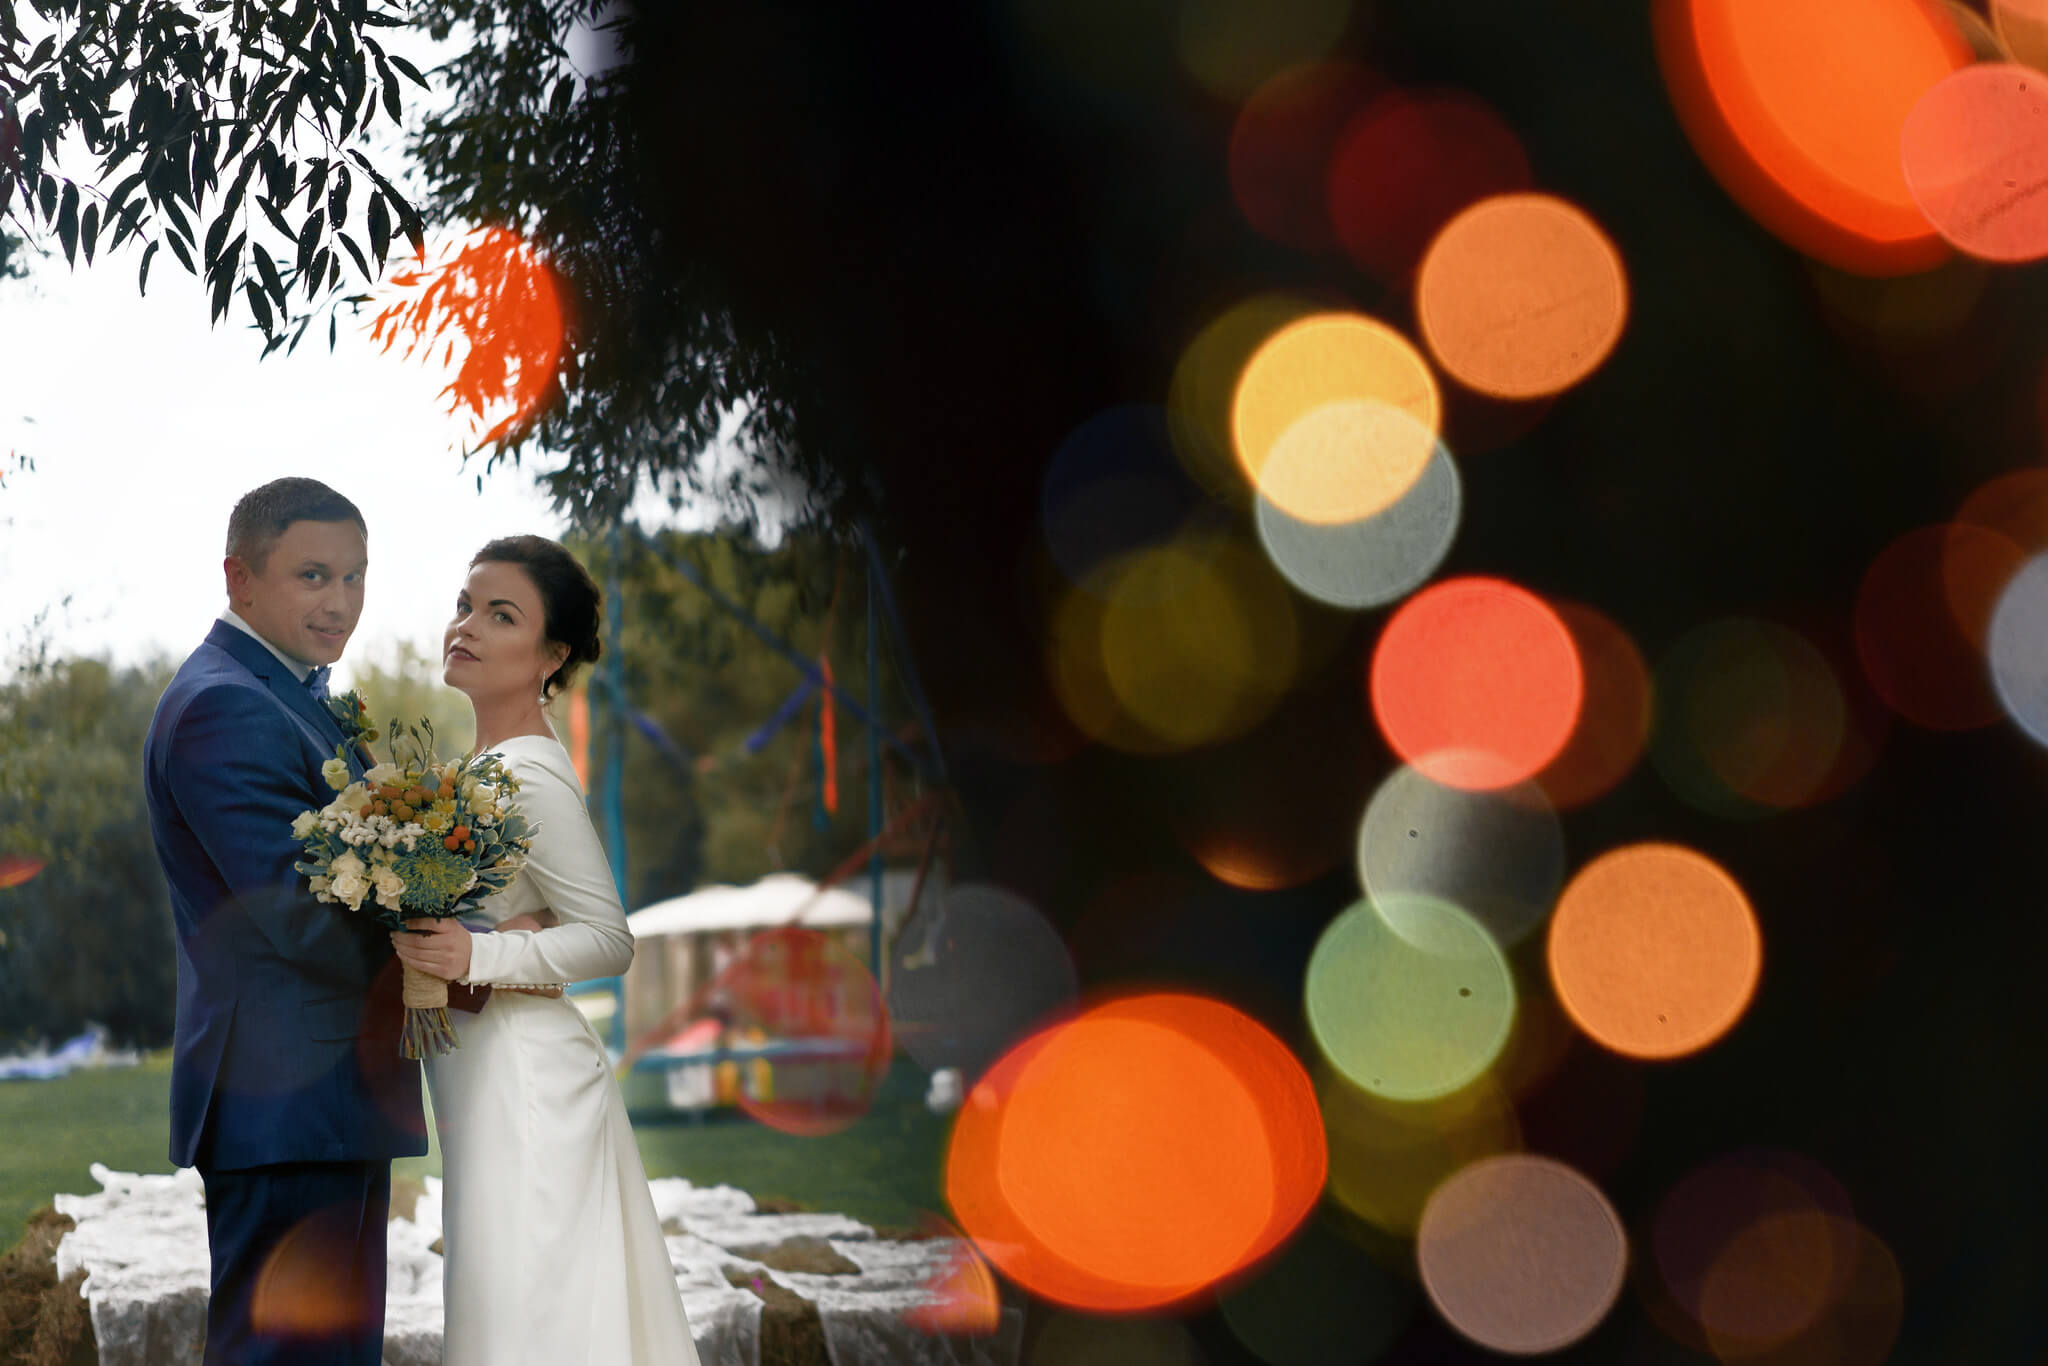 Свадебный фотограф Тверь, фотограф на свадьбу в Твери Роман Какоткин Оригинальная свадебная фотосессия